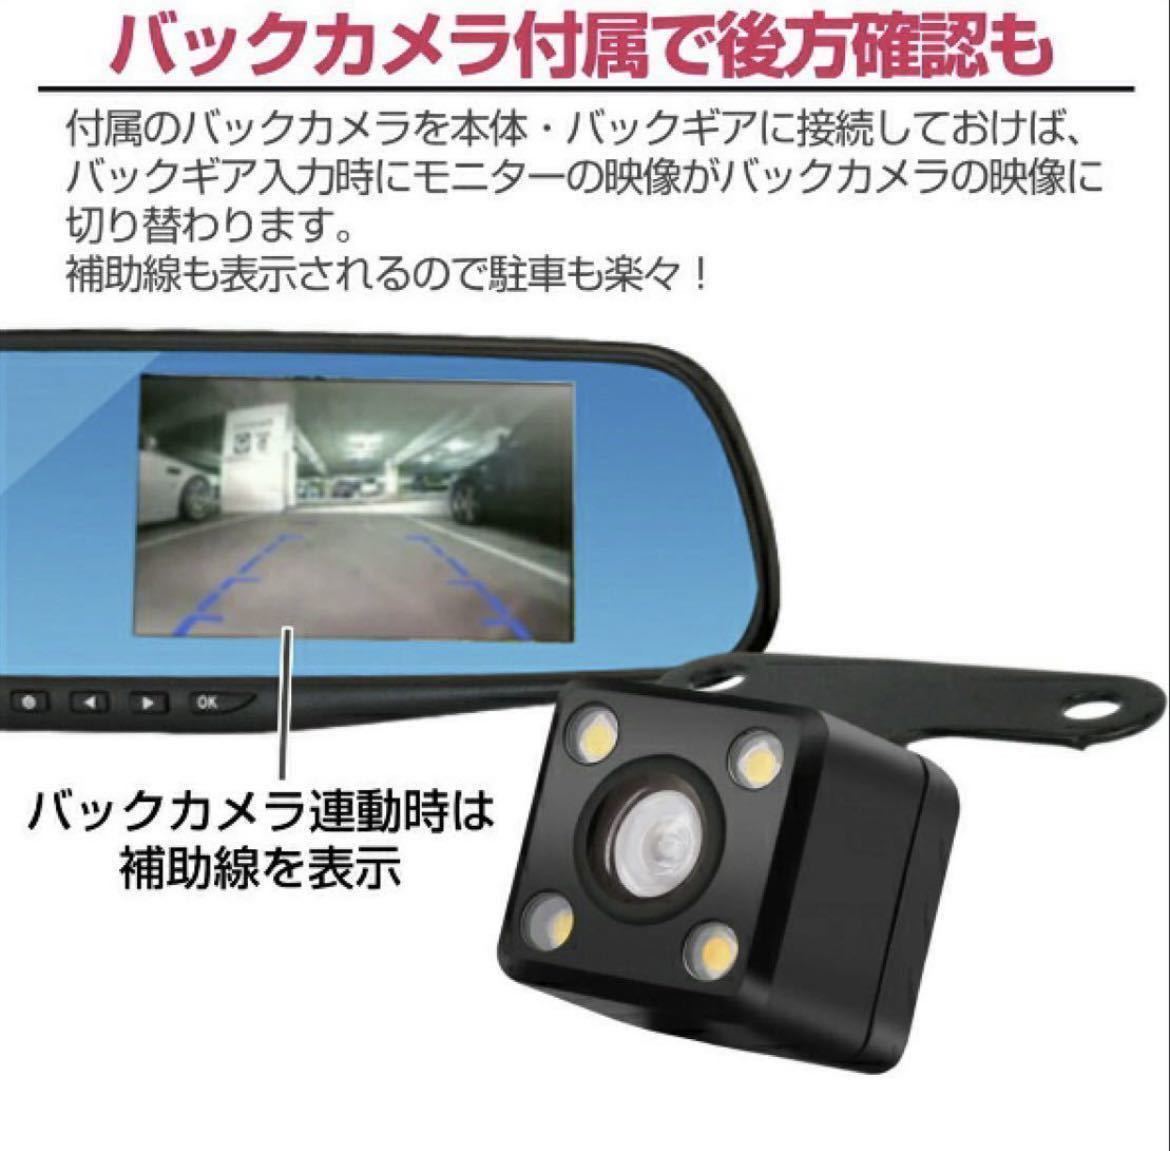 ドライブレコーダー バックカメラ 付き リアカメラ ドラレコ ルームミラー型 4.3インチ ミラー モニター 高画質 広角170度 CCD カメラ 録画_画像3